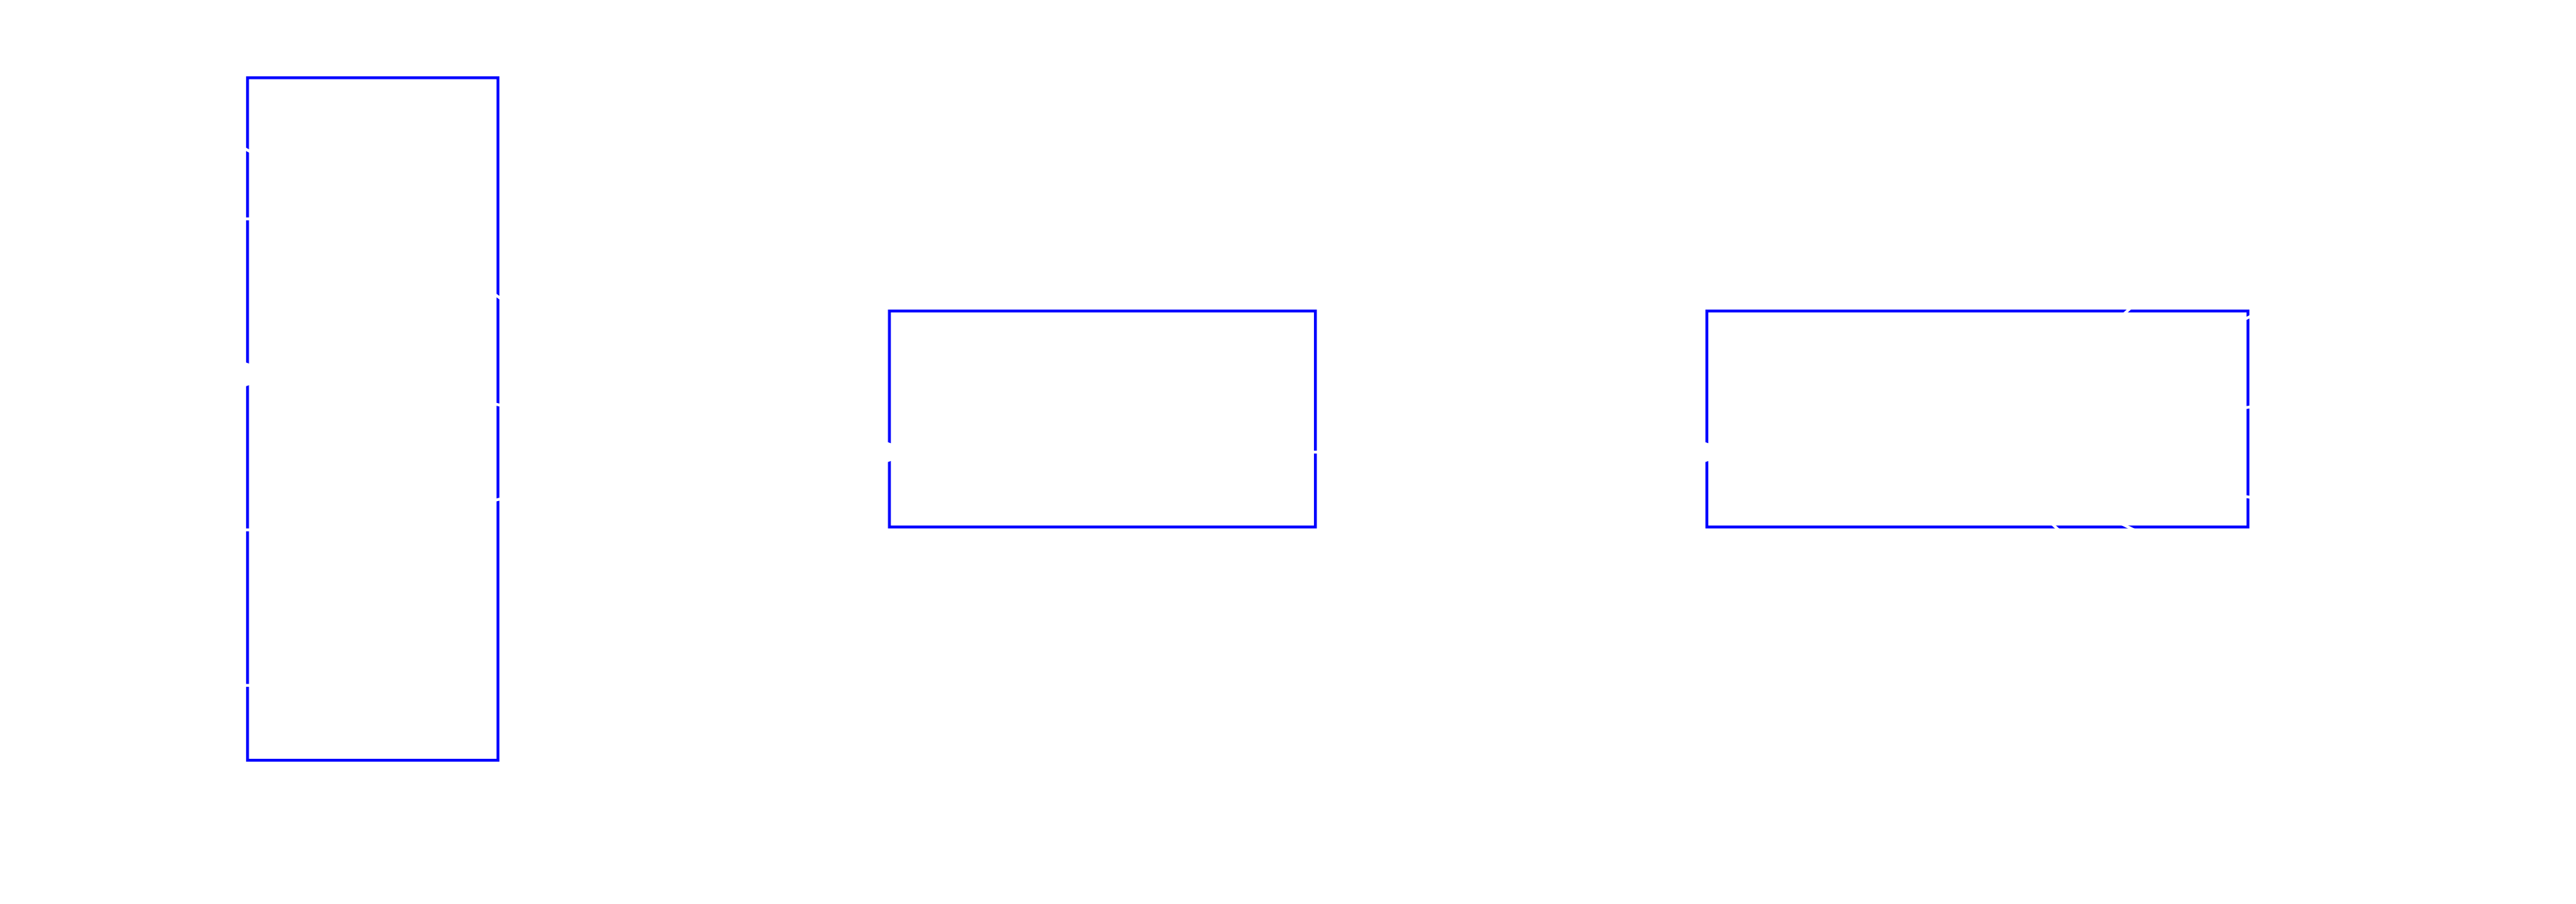 LLVM Compiler Infrastructure